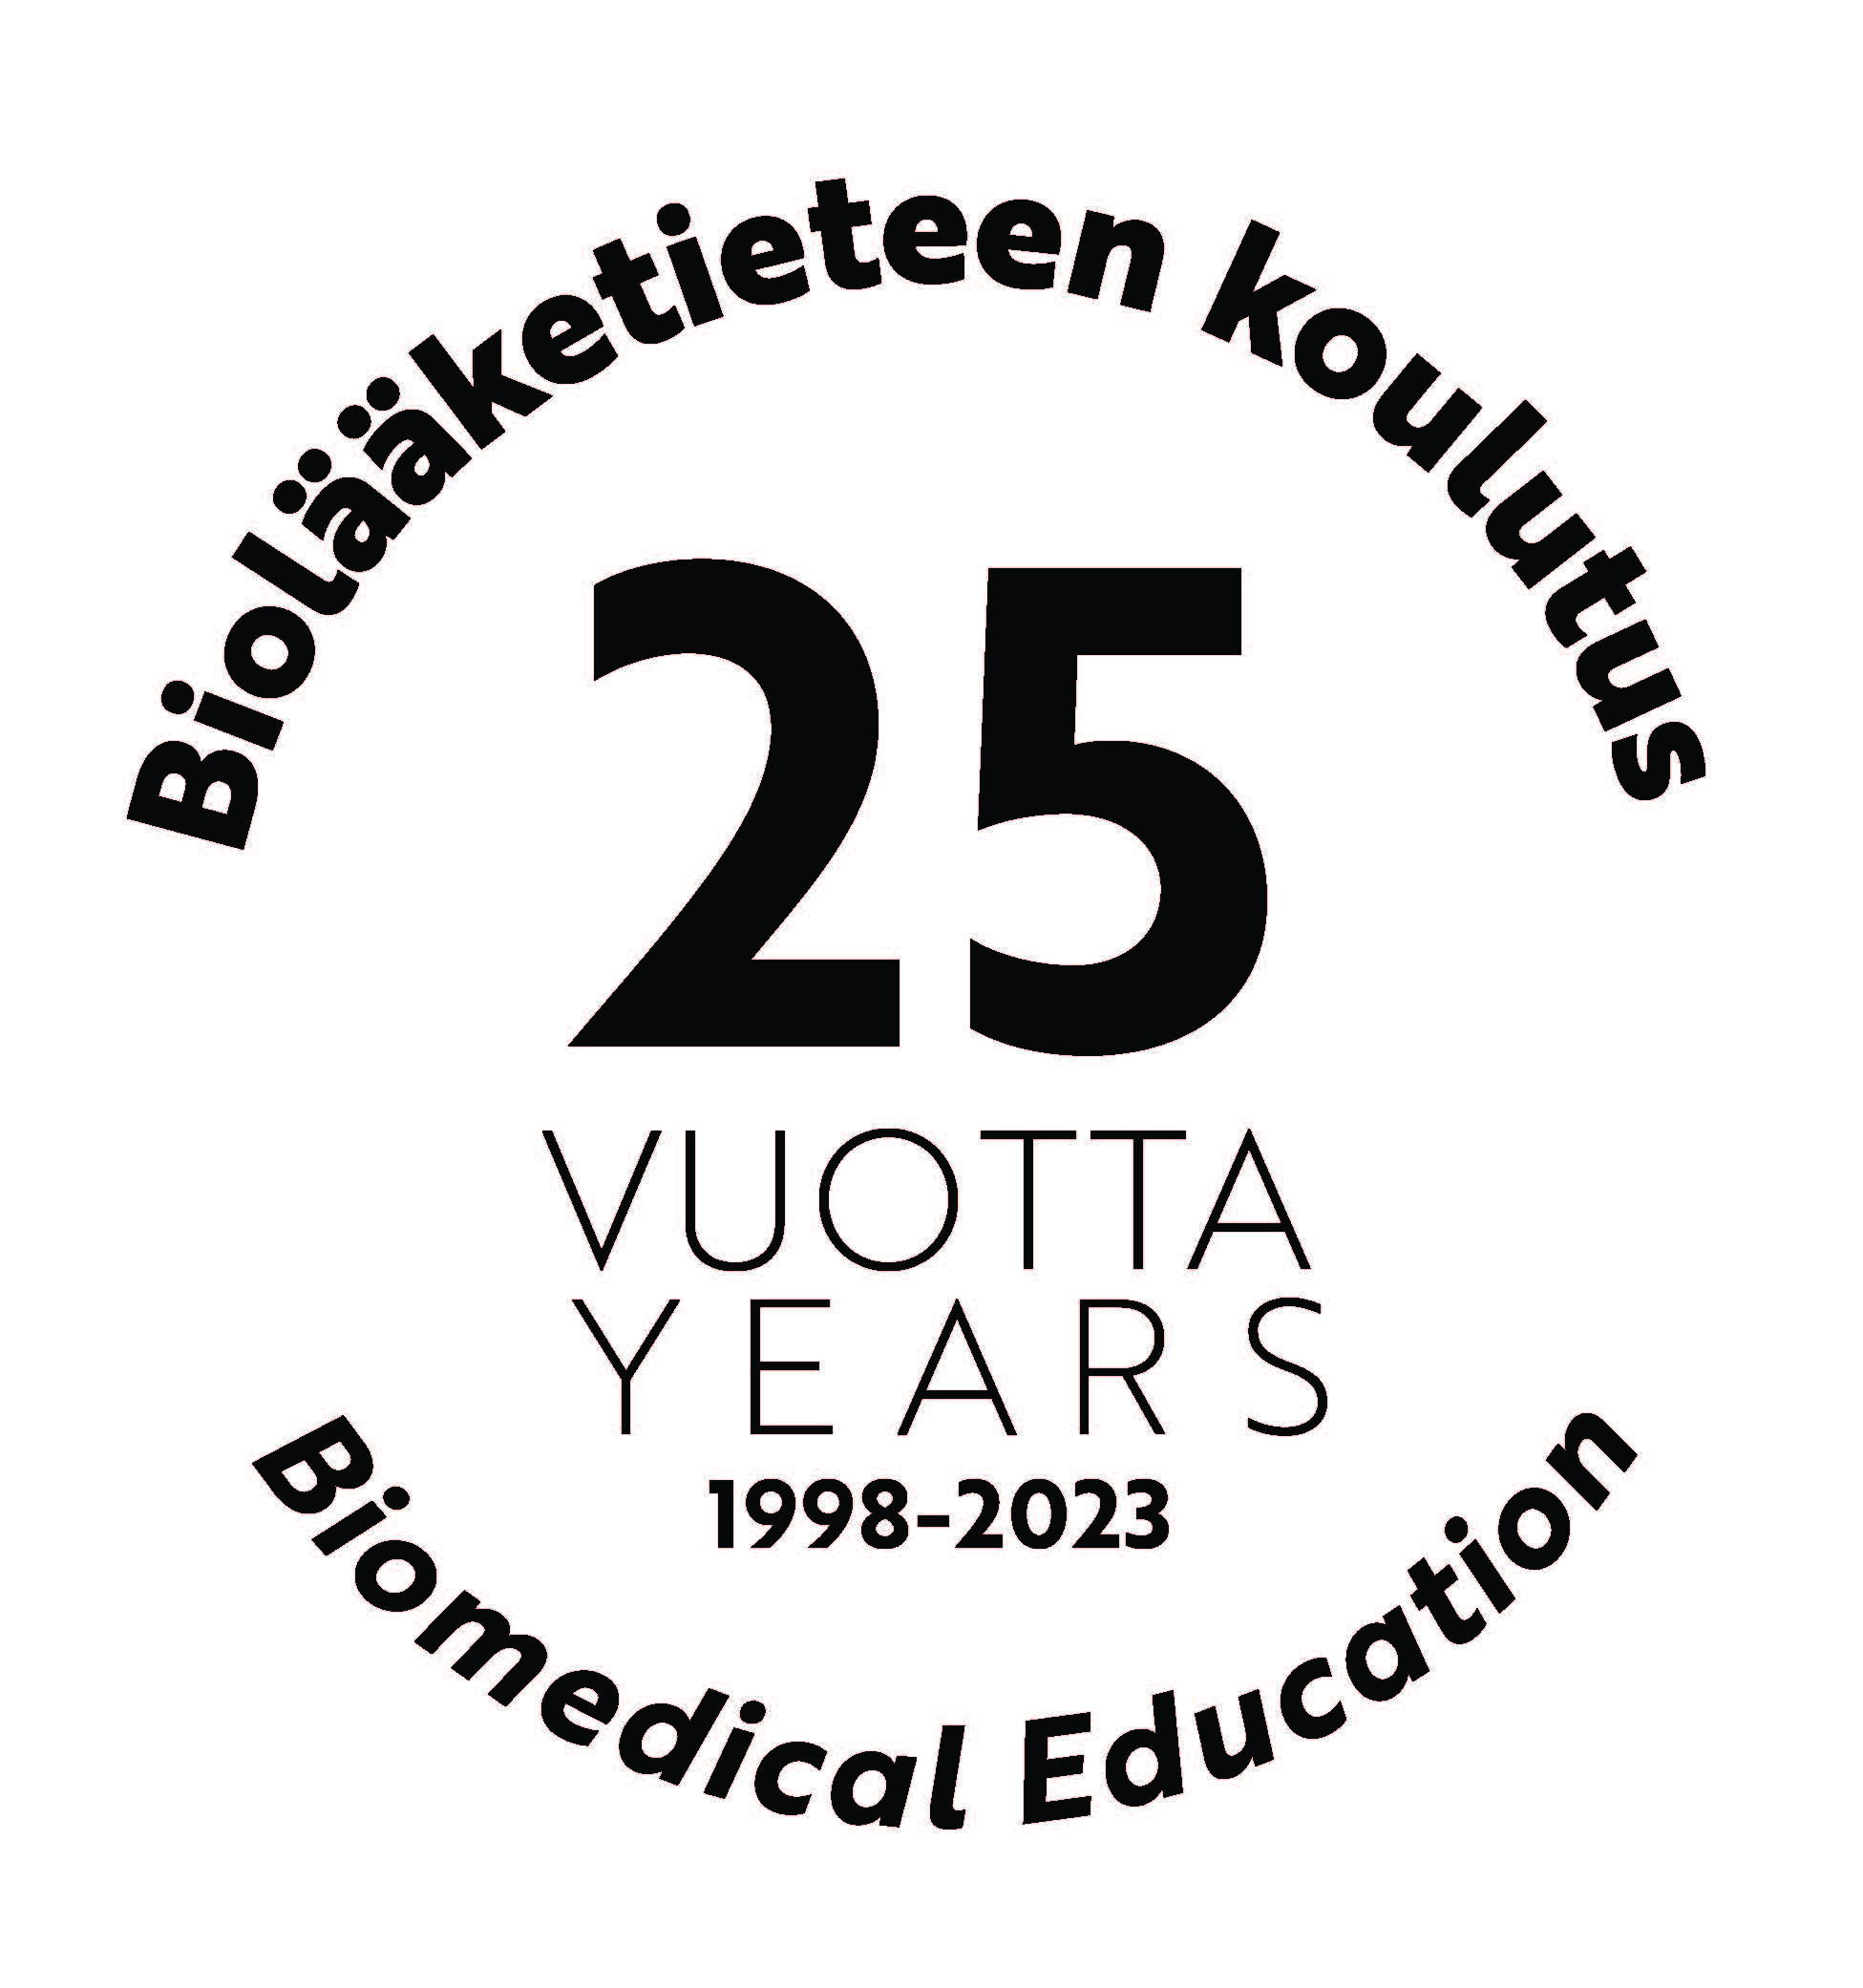 Biolääketiede 25 -logo